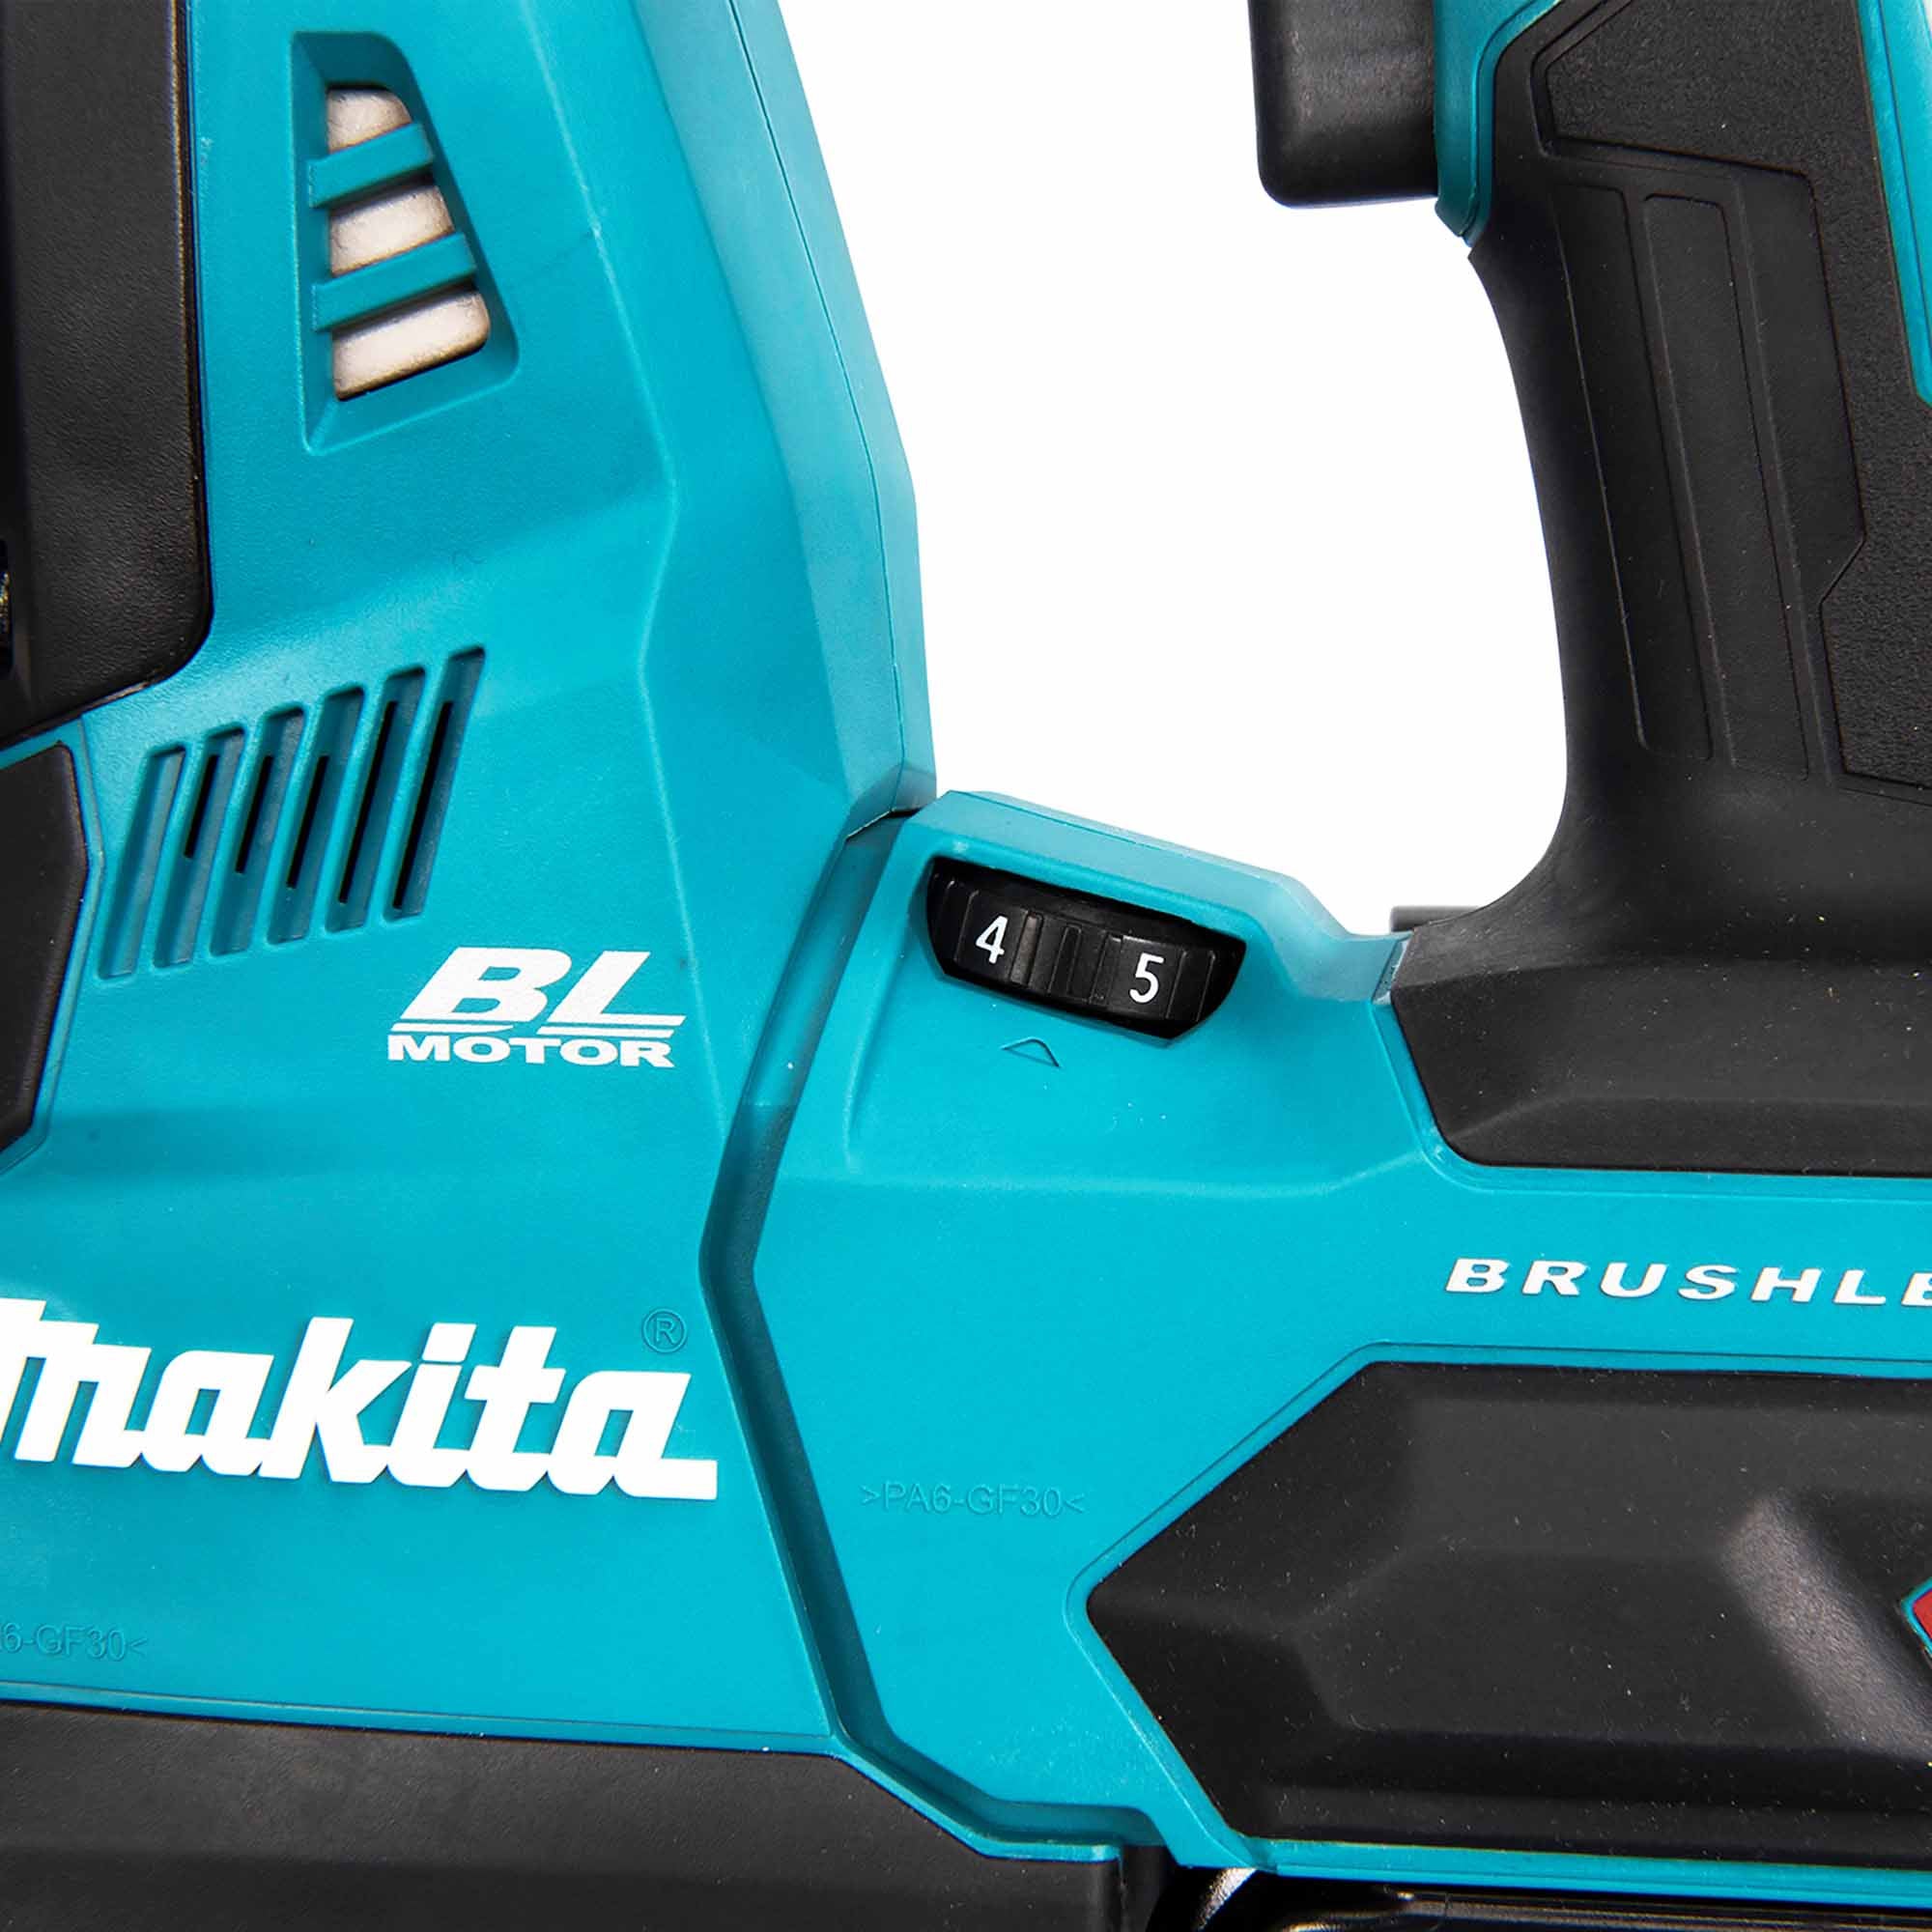 Makita HR003GM201 40V 4Ah hammer drill